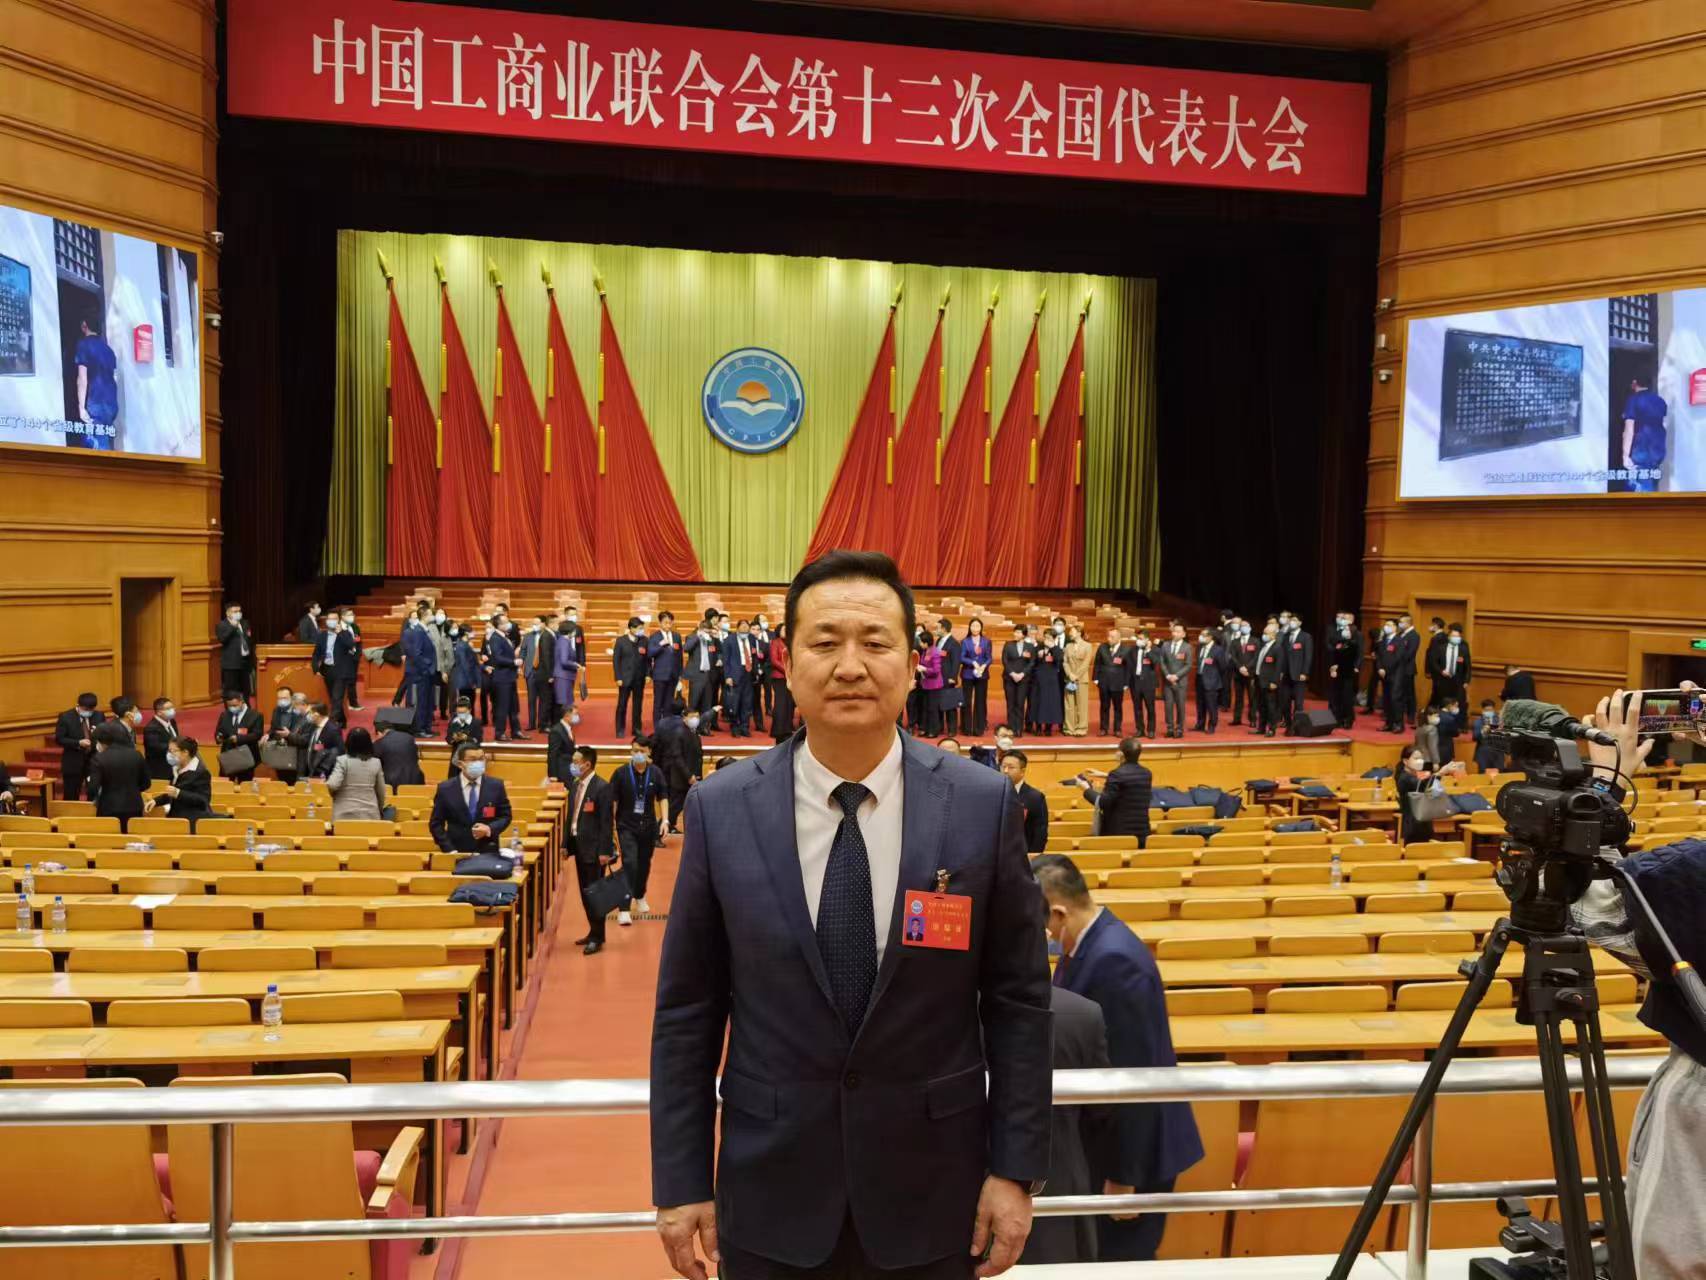 齐峰董事长出席中国工商业联合会第十三次全国代表大会